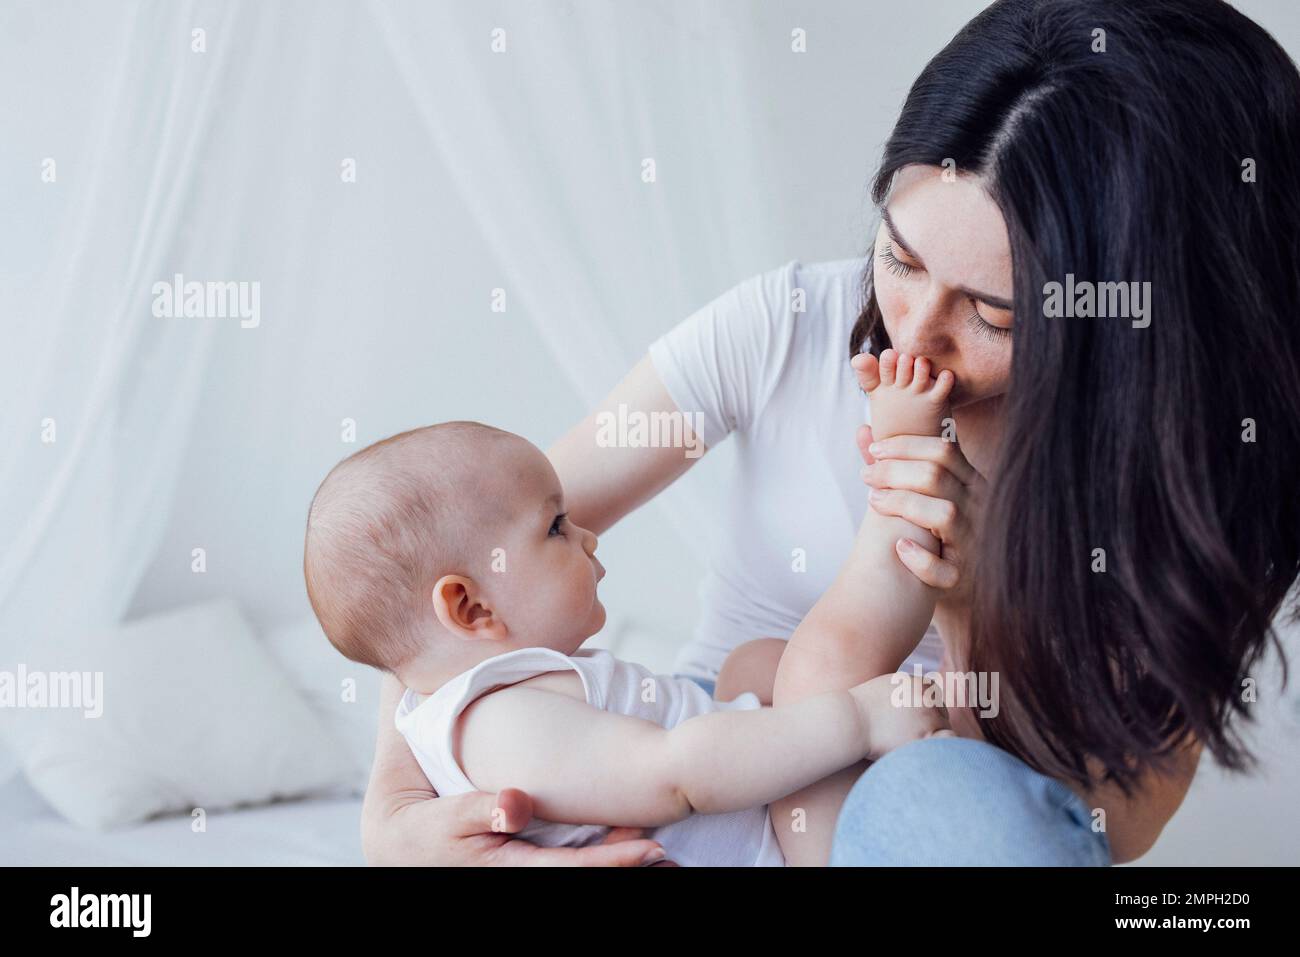 Jeune belle mère embrasse son bébé mignon sur la joue. La brune blanche touche son enfant souriant avec son visage. Joli bébé dans un body blanc avec h Banque D'Images